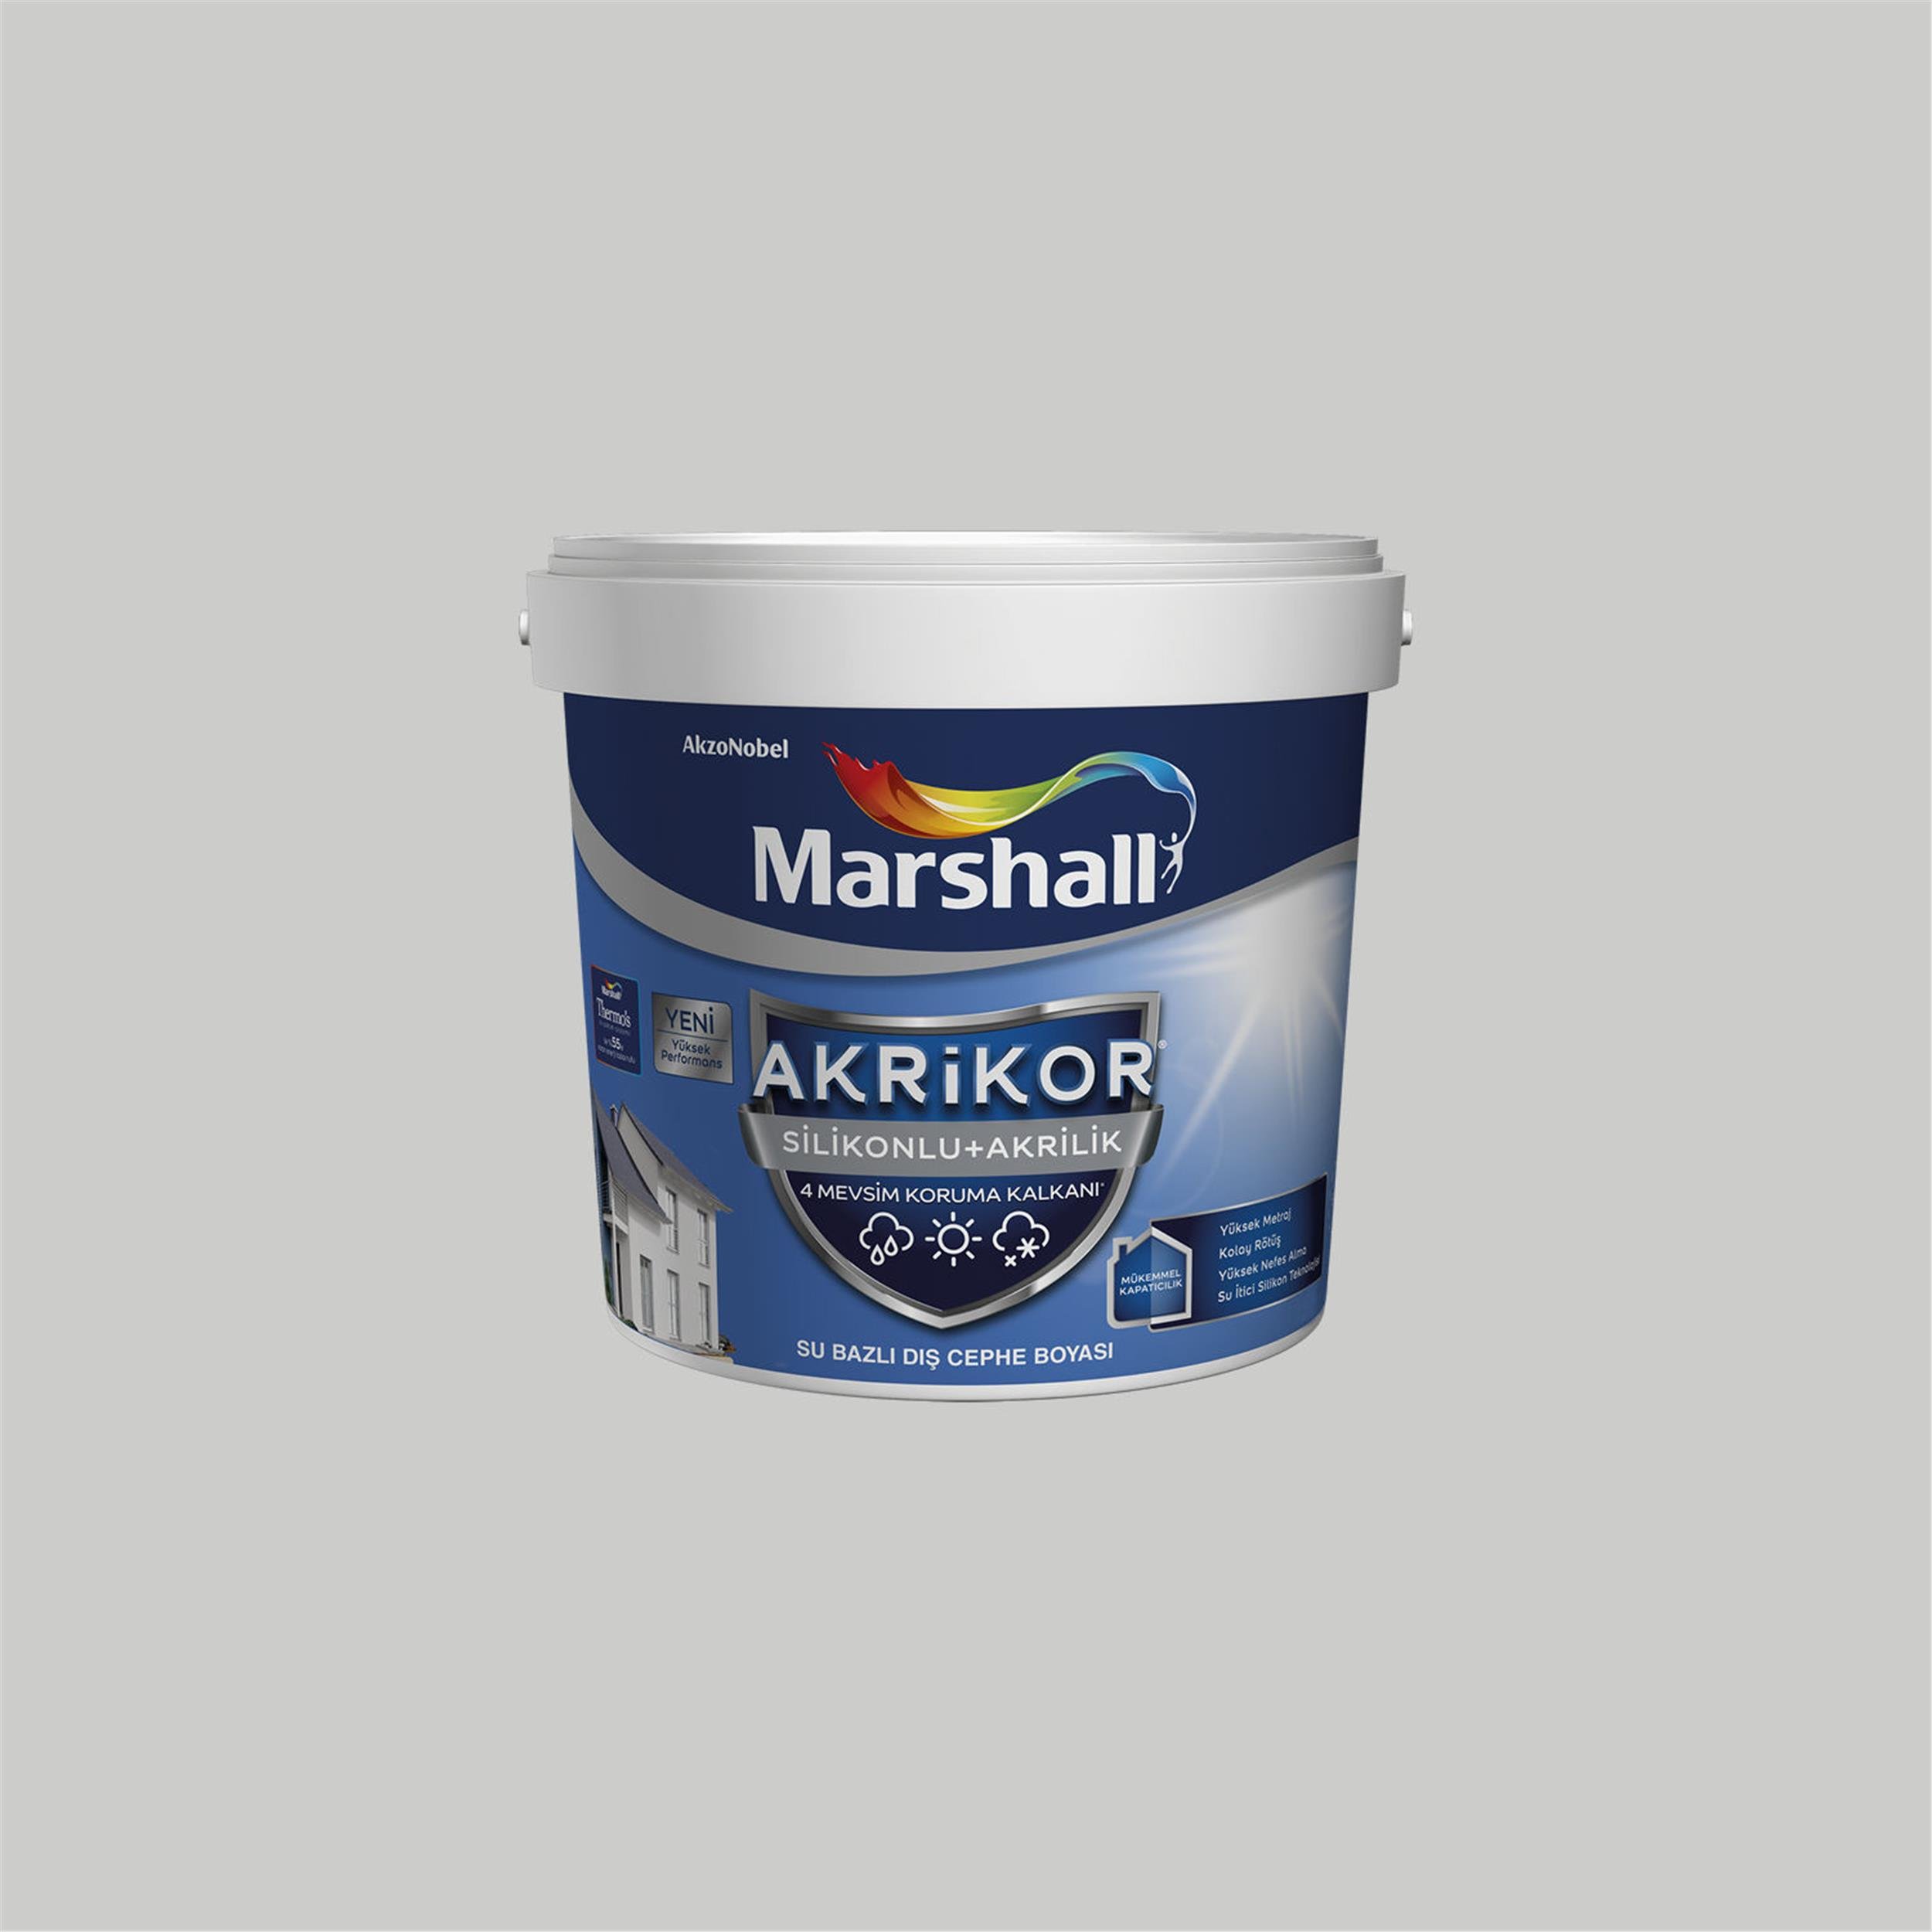 Marshall Gelin Teli 7,5 Litre Akrikor Silikonlu+Akrilik Su Bazlı Dış Cephe  Boyası (MARSHALL.5271088) | Afeks Yapı Market